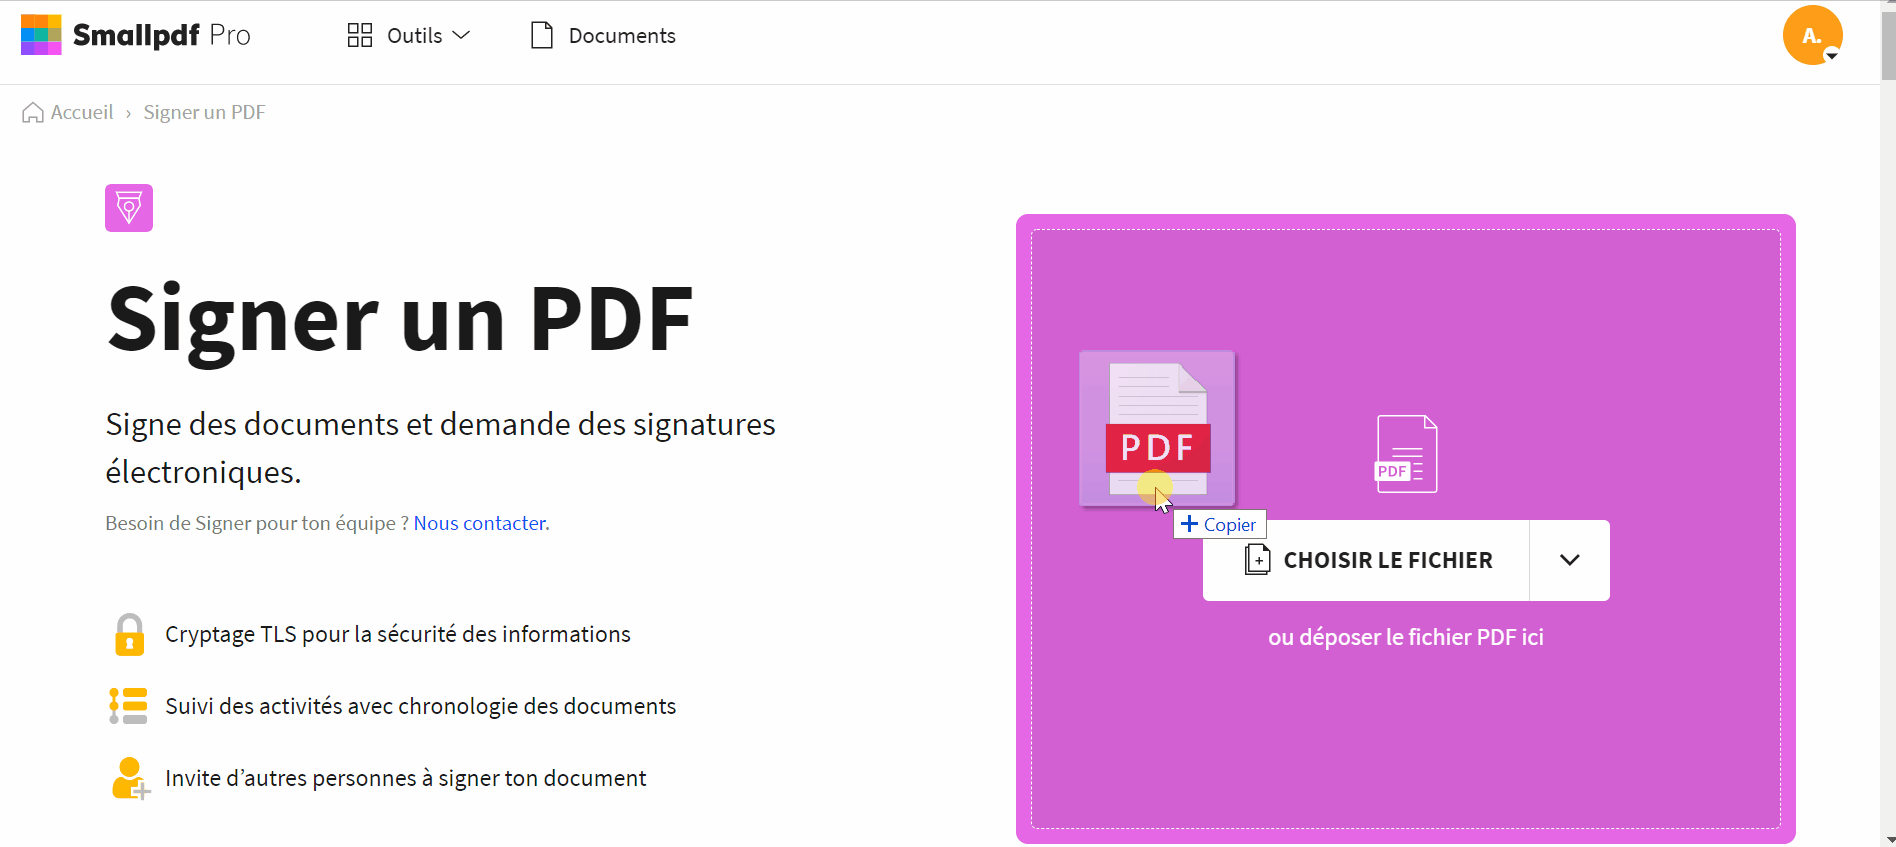 2020-10-01 - Smallpdf lance une version améliorée de l’outil de signature PDF - 2. Uploade le document que tu souhaites signer